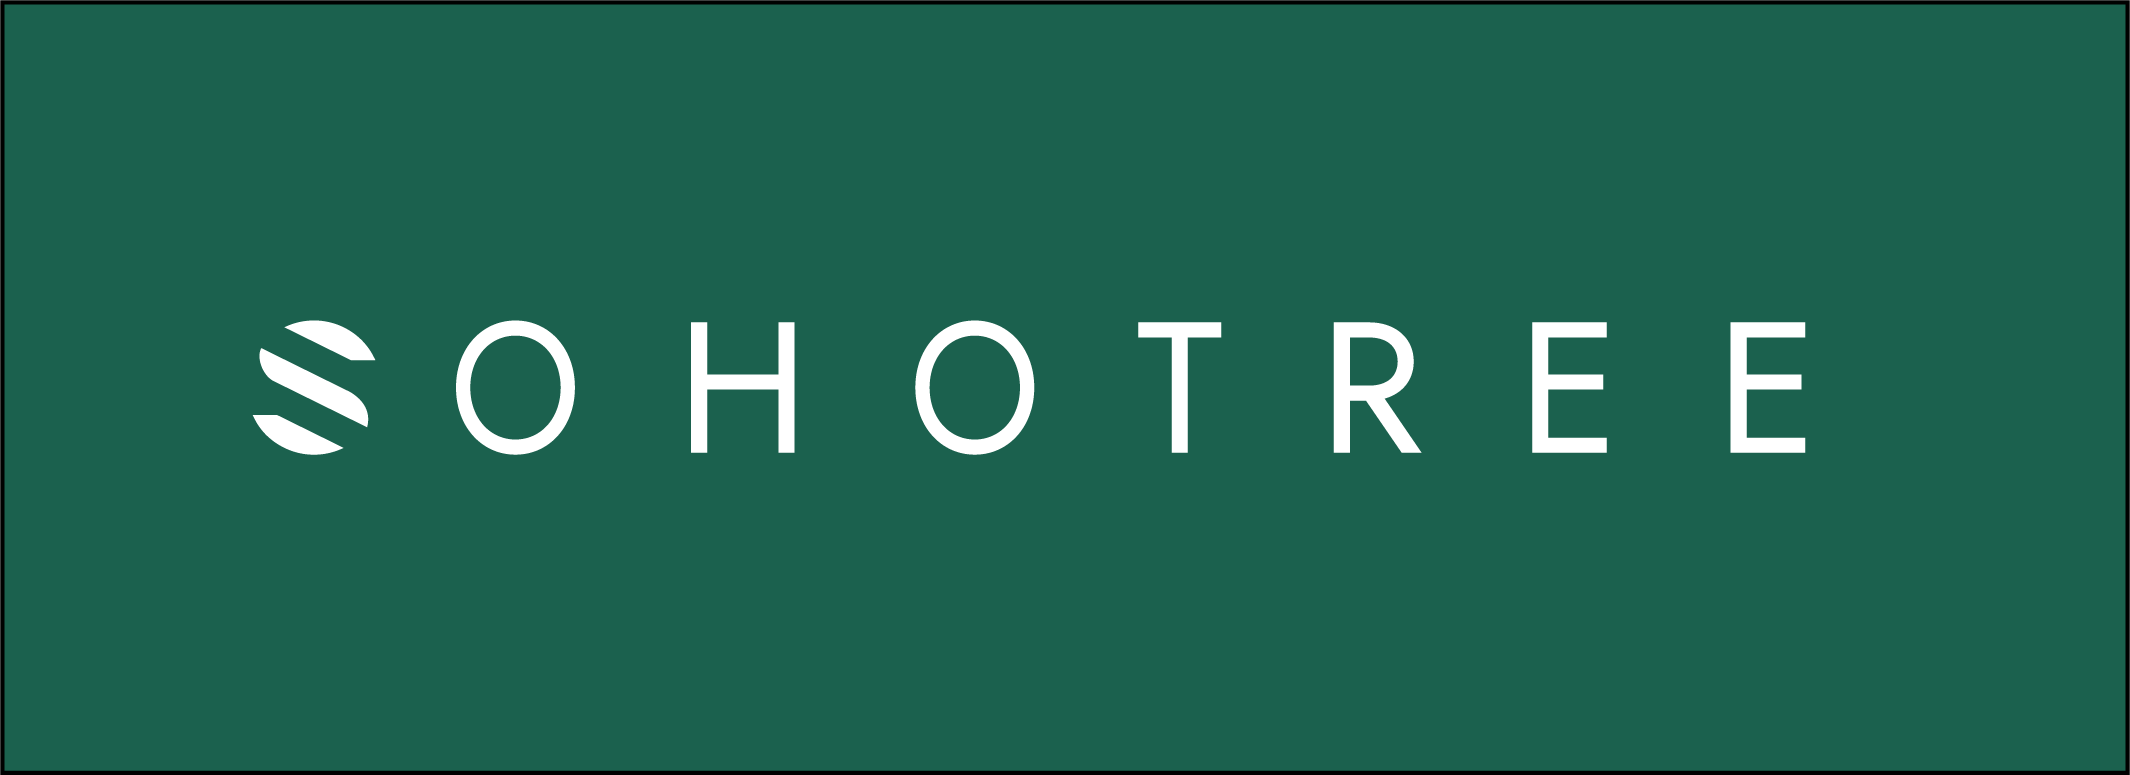 Sohotree Logo green